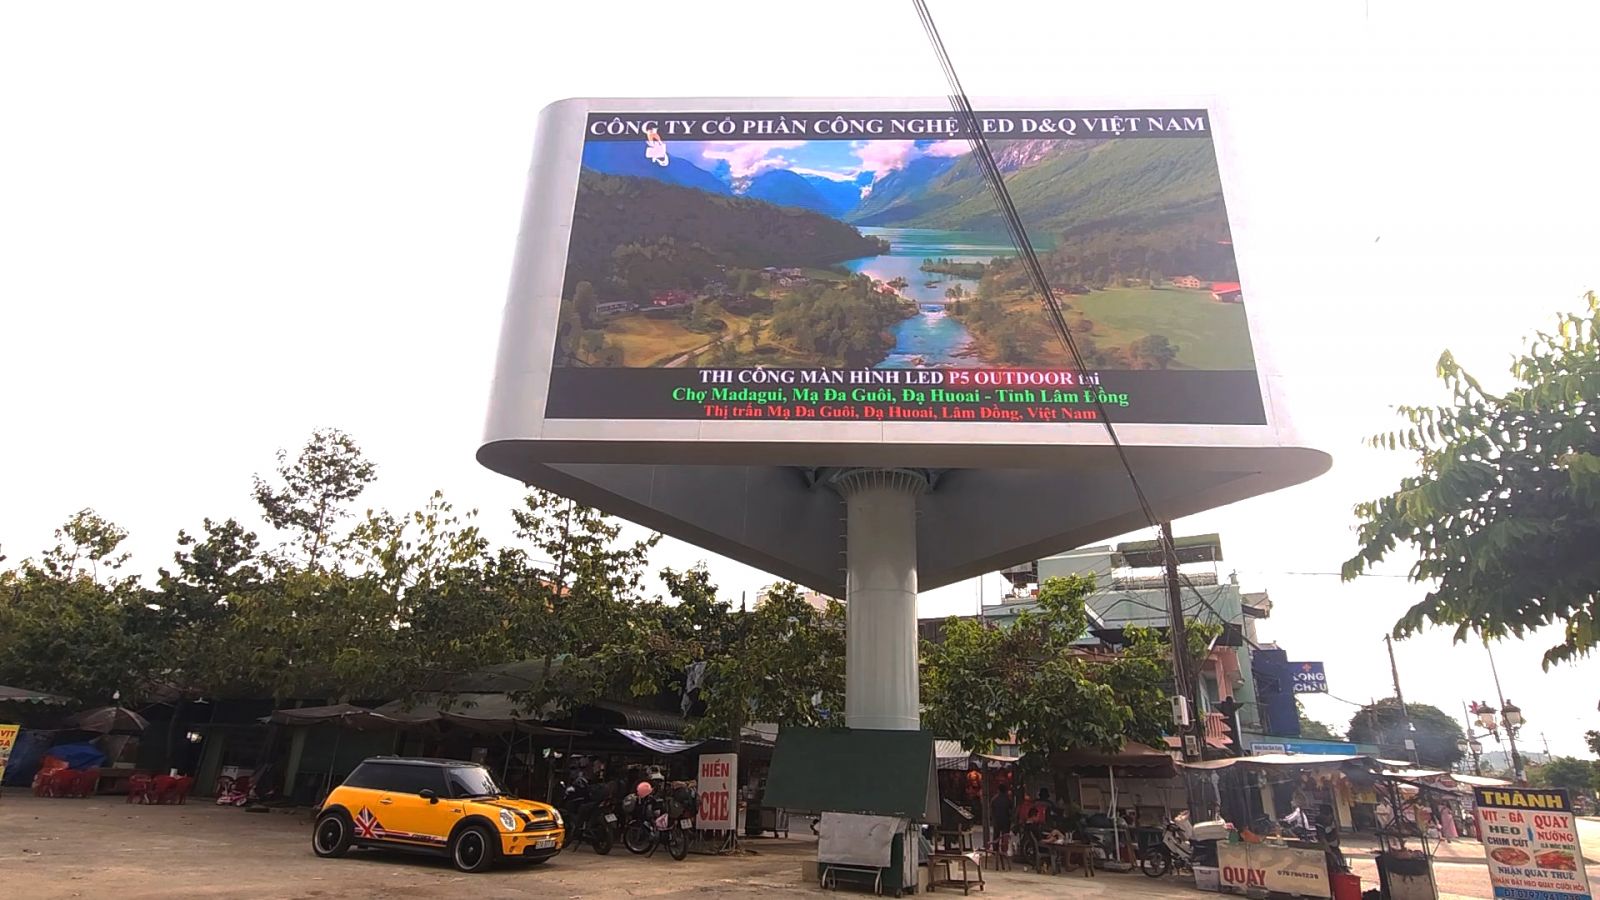 Cổng Chợ MADAGUI LÂM ĐỒNG | Led D&Q VietNam Xấy đựng Cột màn hình LED 3 Mặt P5 out chạy quảng cáo